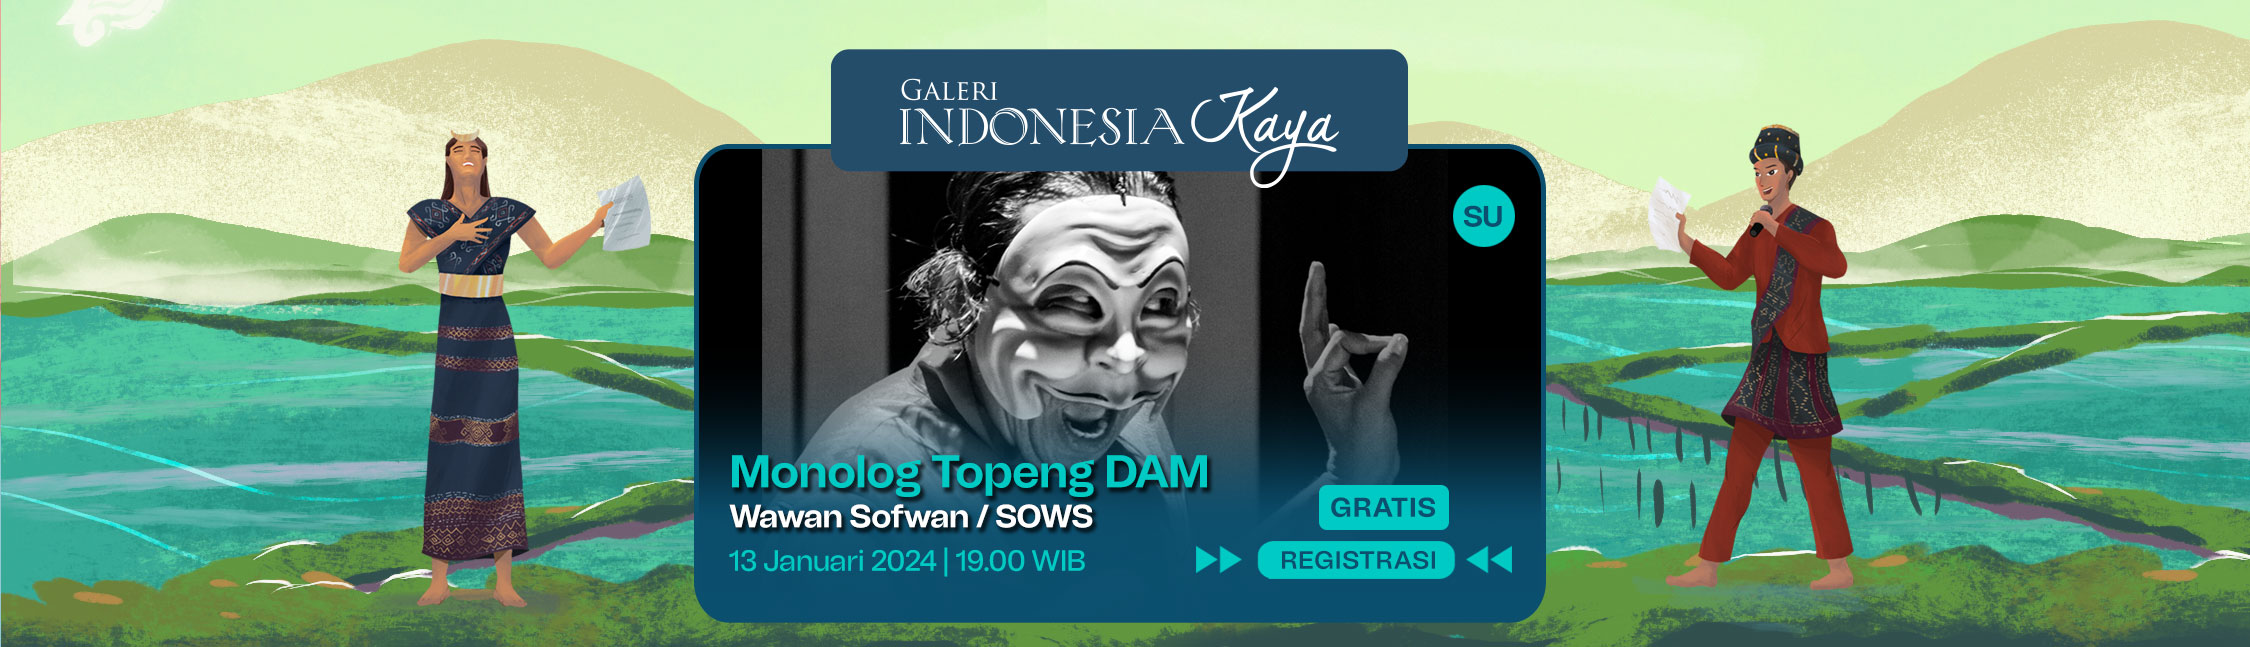 Monolog Topeng DAM oleh Wawan Sofwan/SOWS 19.00